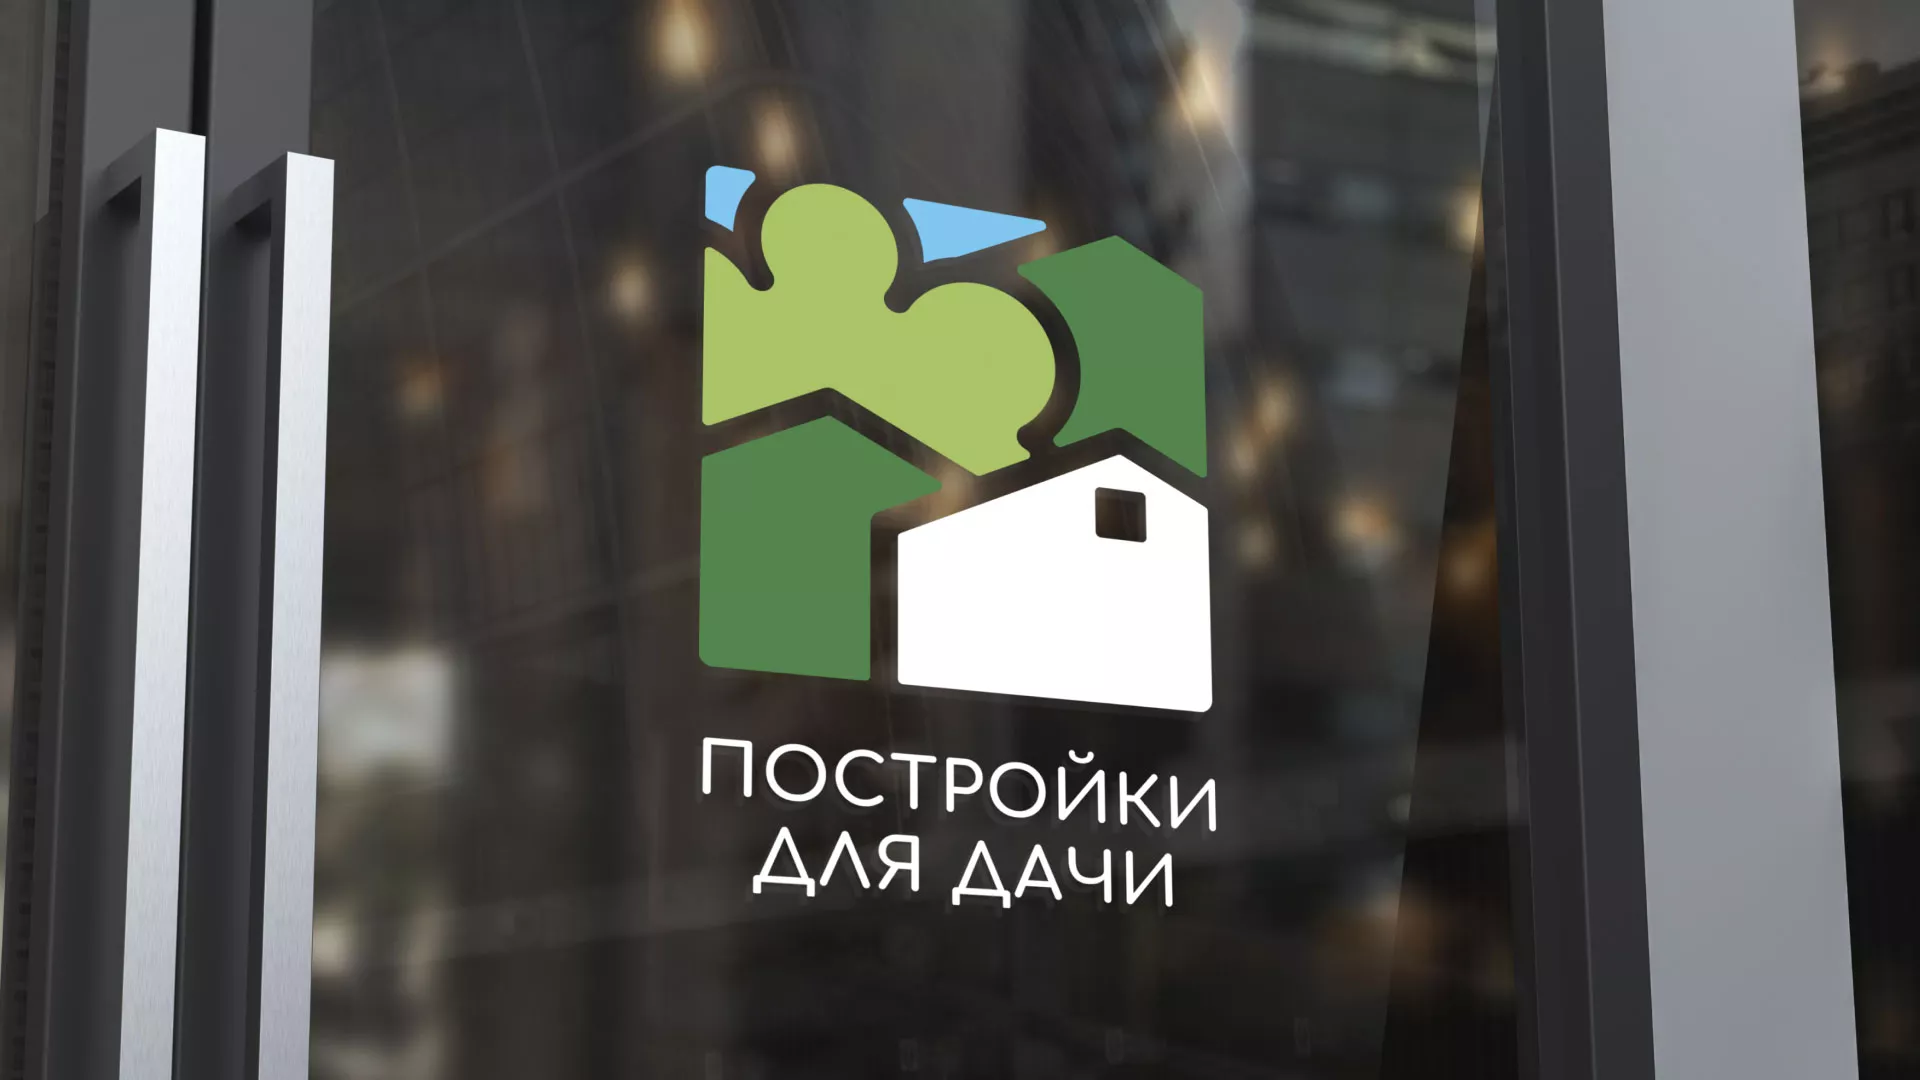 Разработка логотипа в Чекалине для компании «Постройки для дачи»